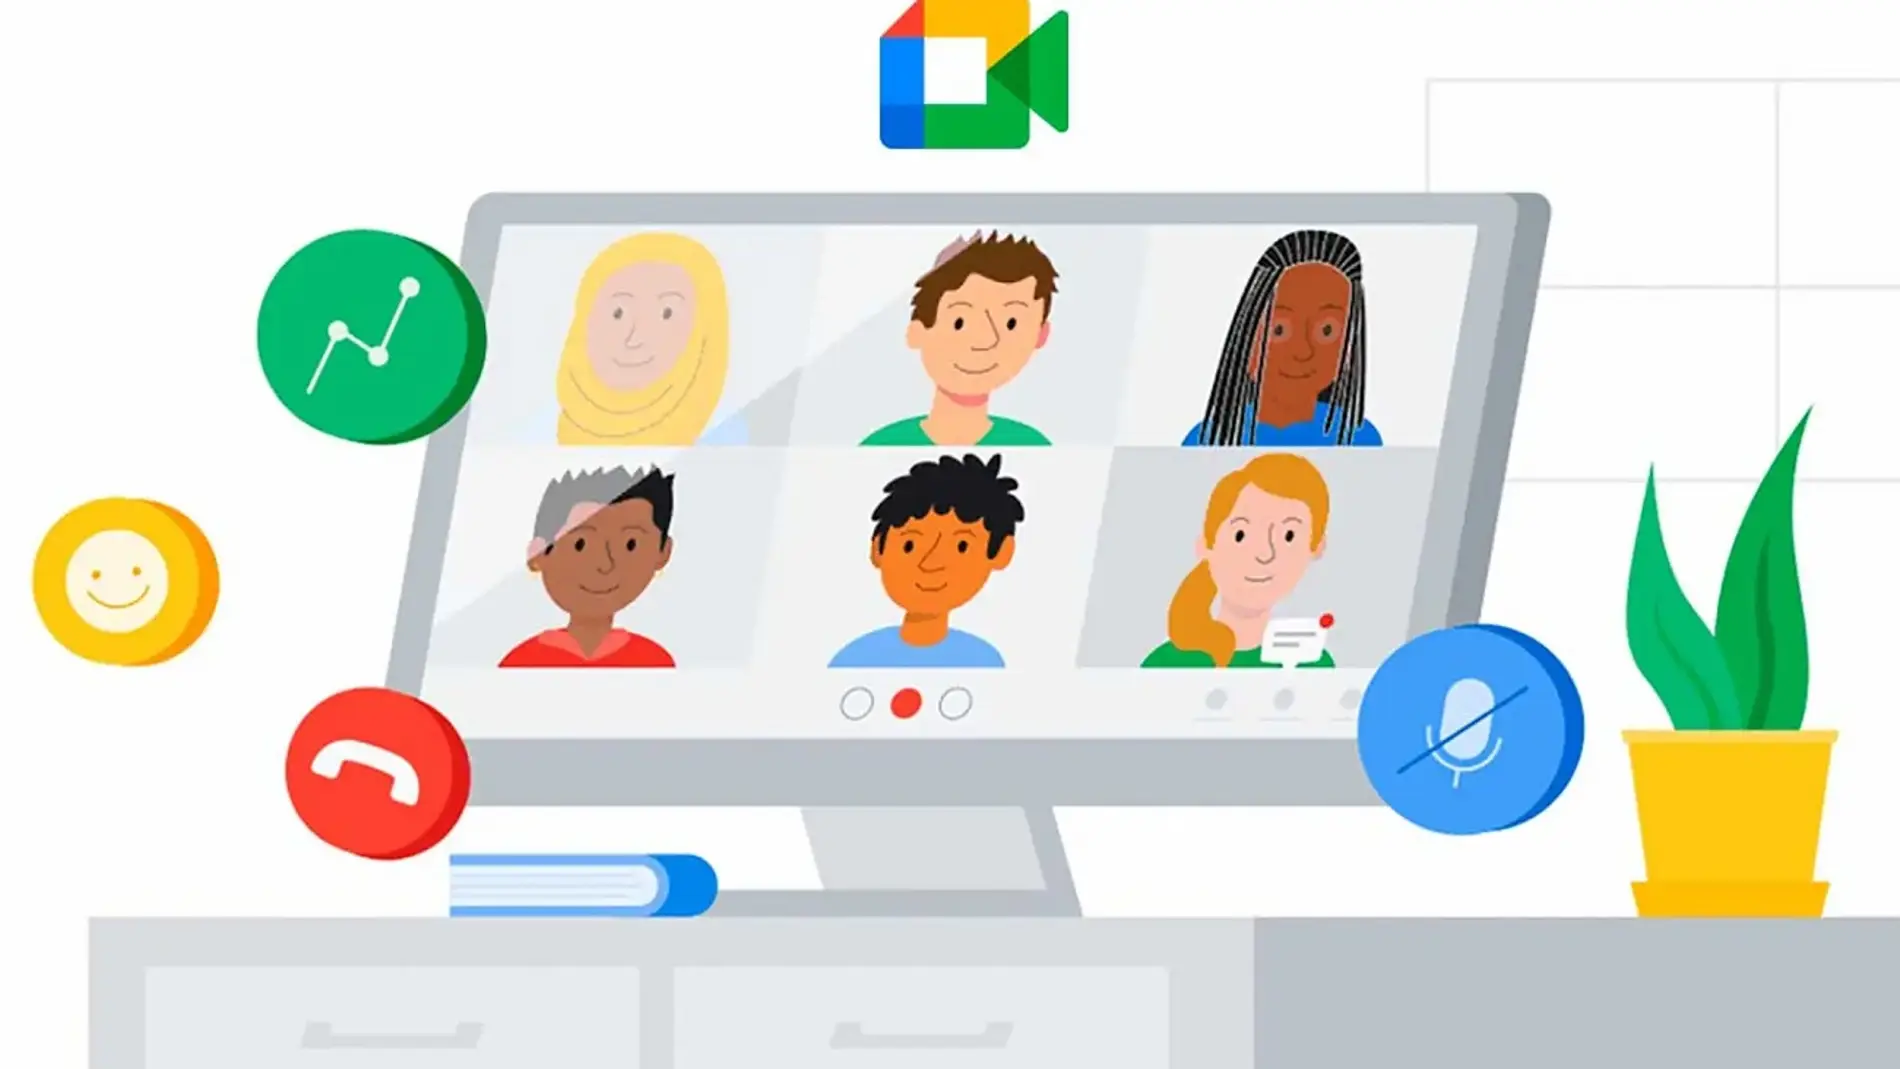 Activa los filtros faciales en Google Meet y dale un toque divertido a tus videollamadas